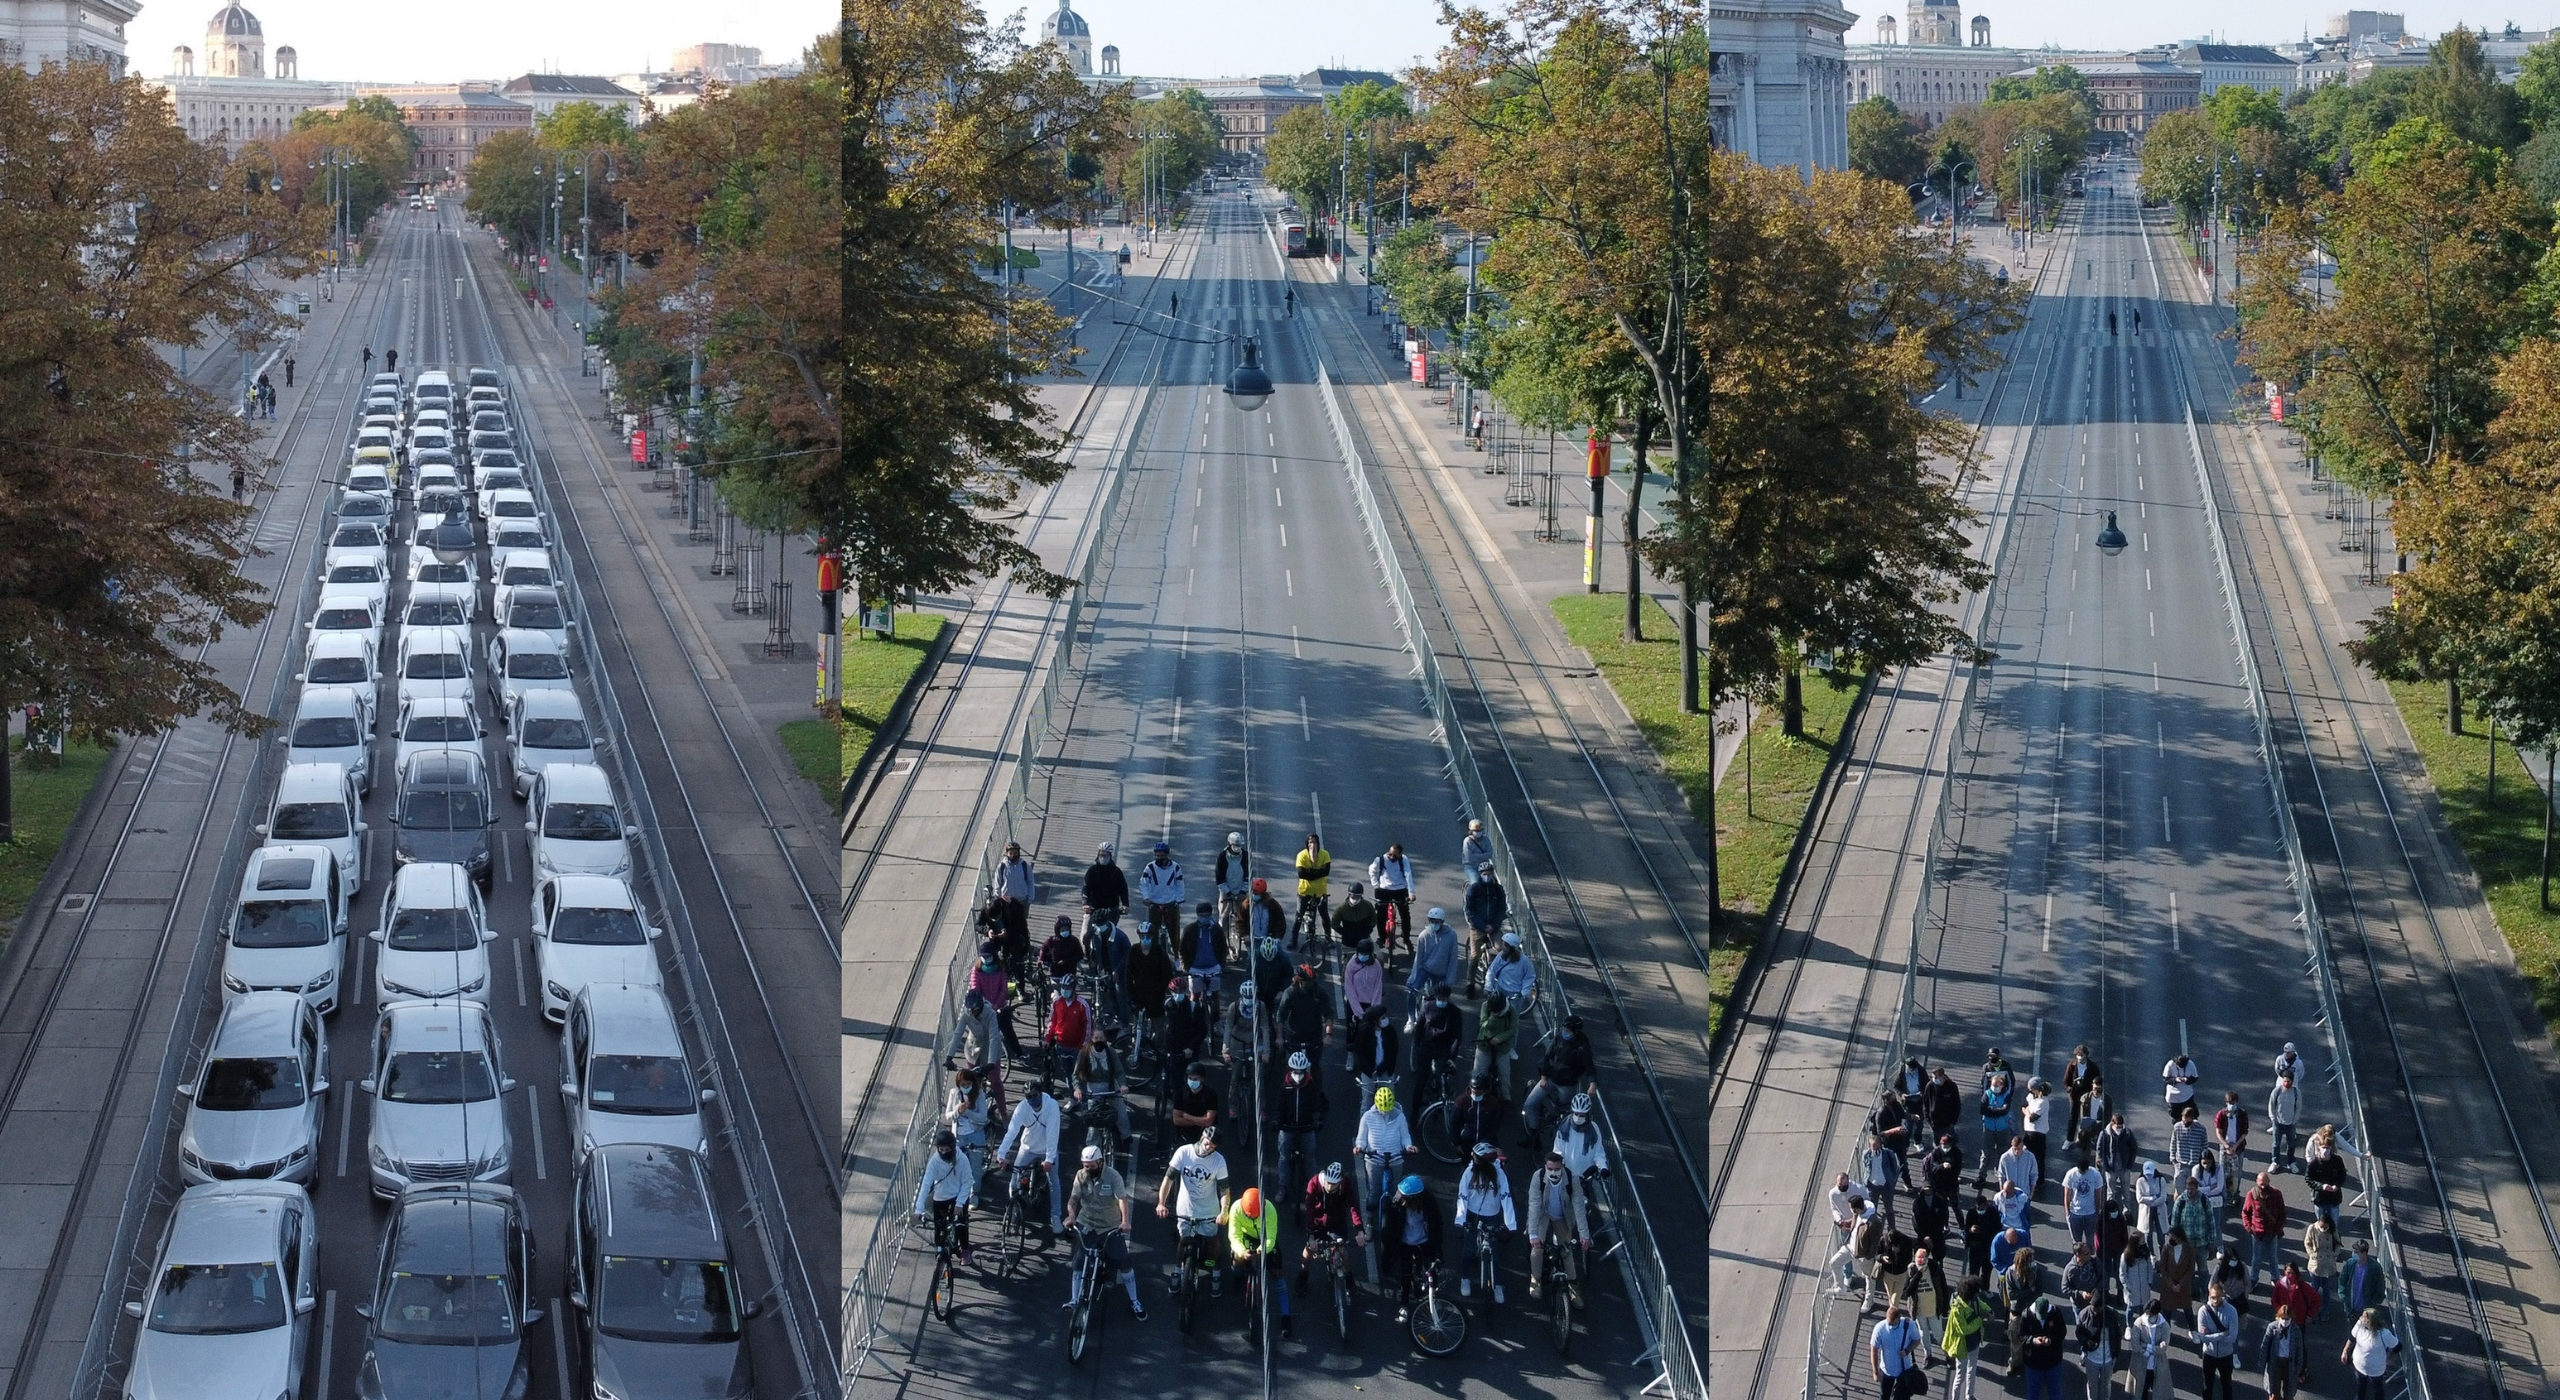 Im Rahmen der Europäischen Mobilitätswoche hat die Mobilitätsagentur am Ring dargestellt, wie viel Platz Autos, Radfahrende und Zufußgehende in der Stadt brauchen.